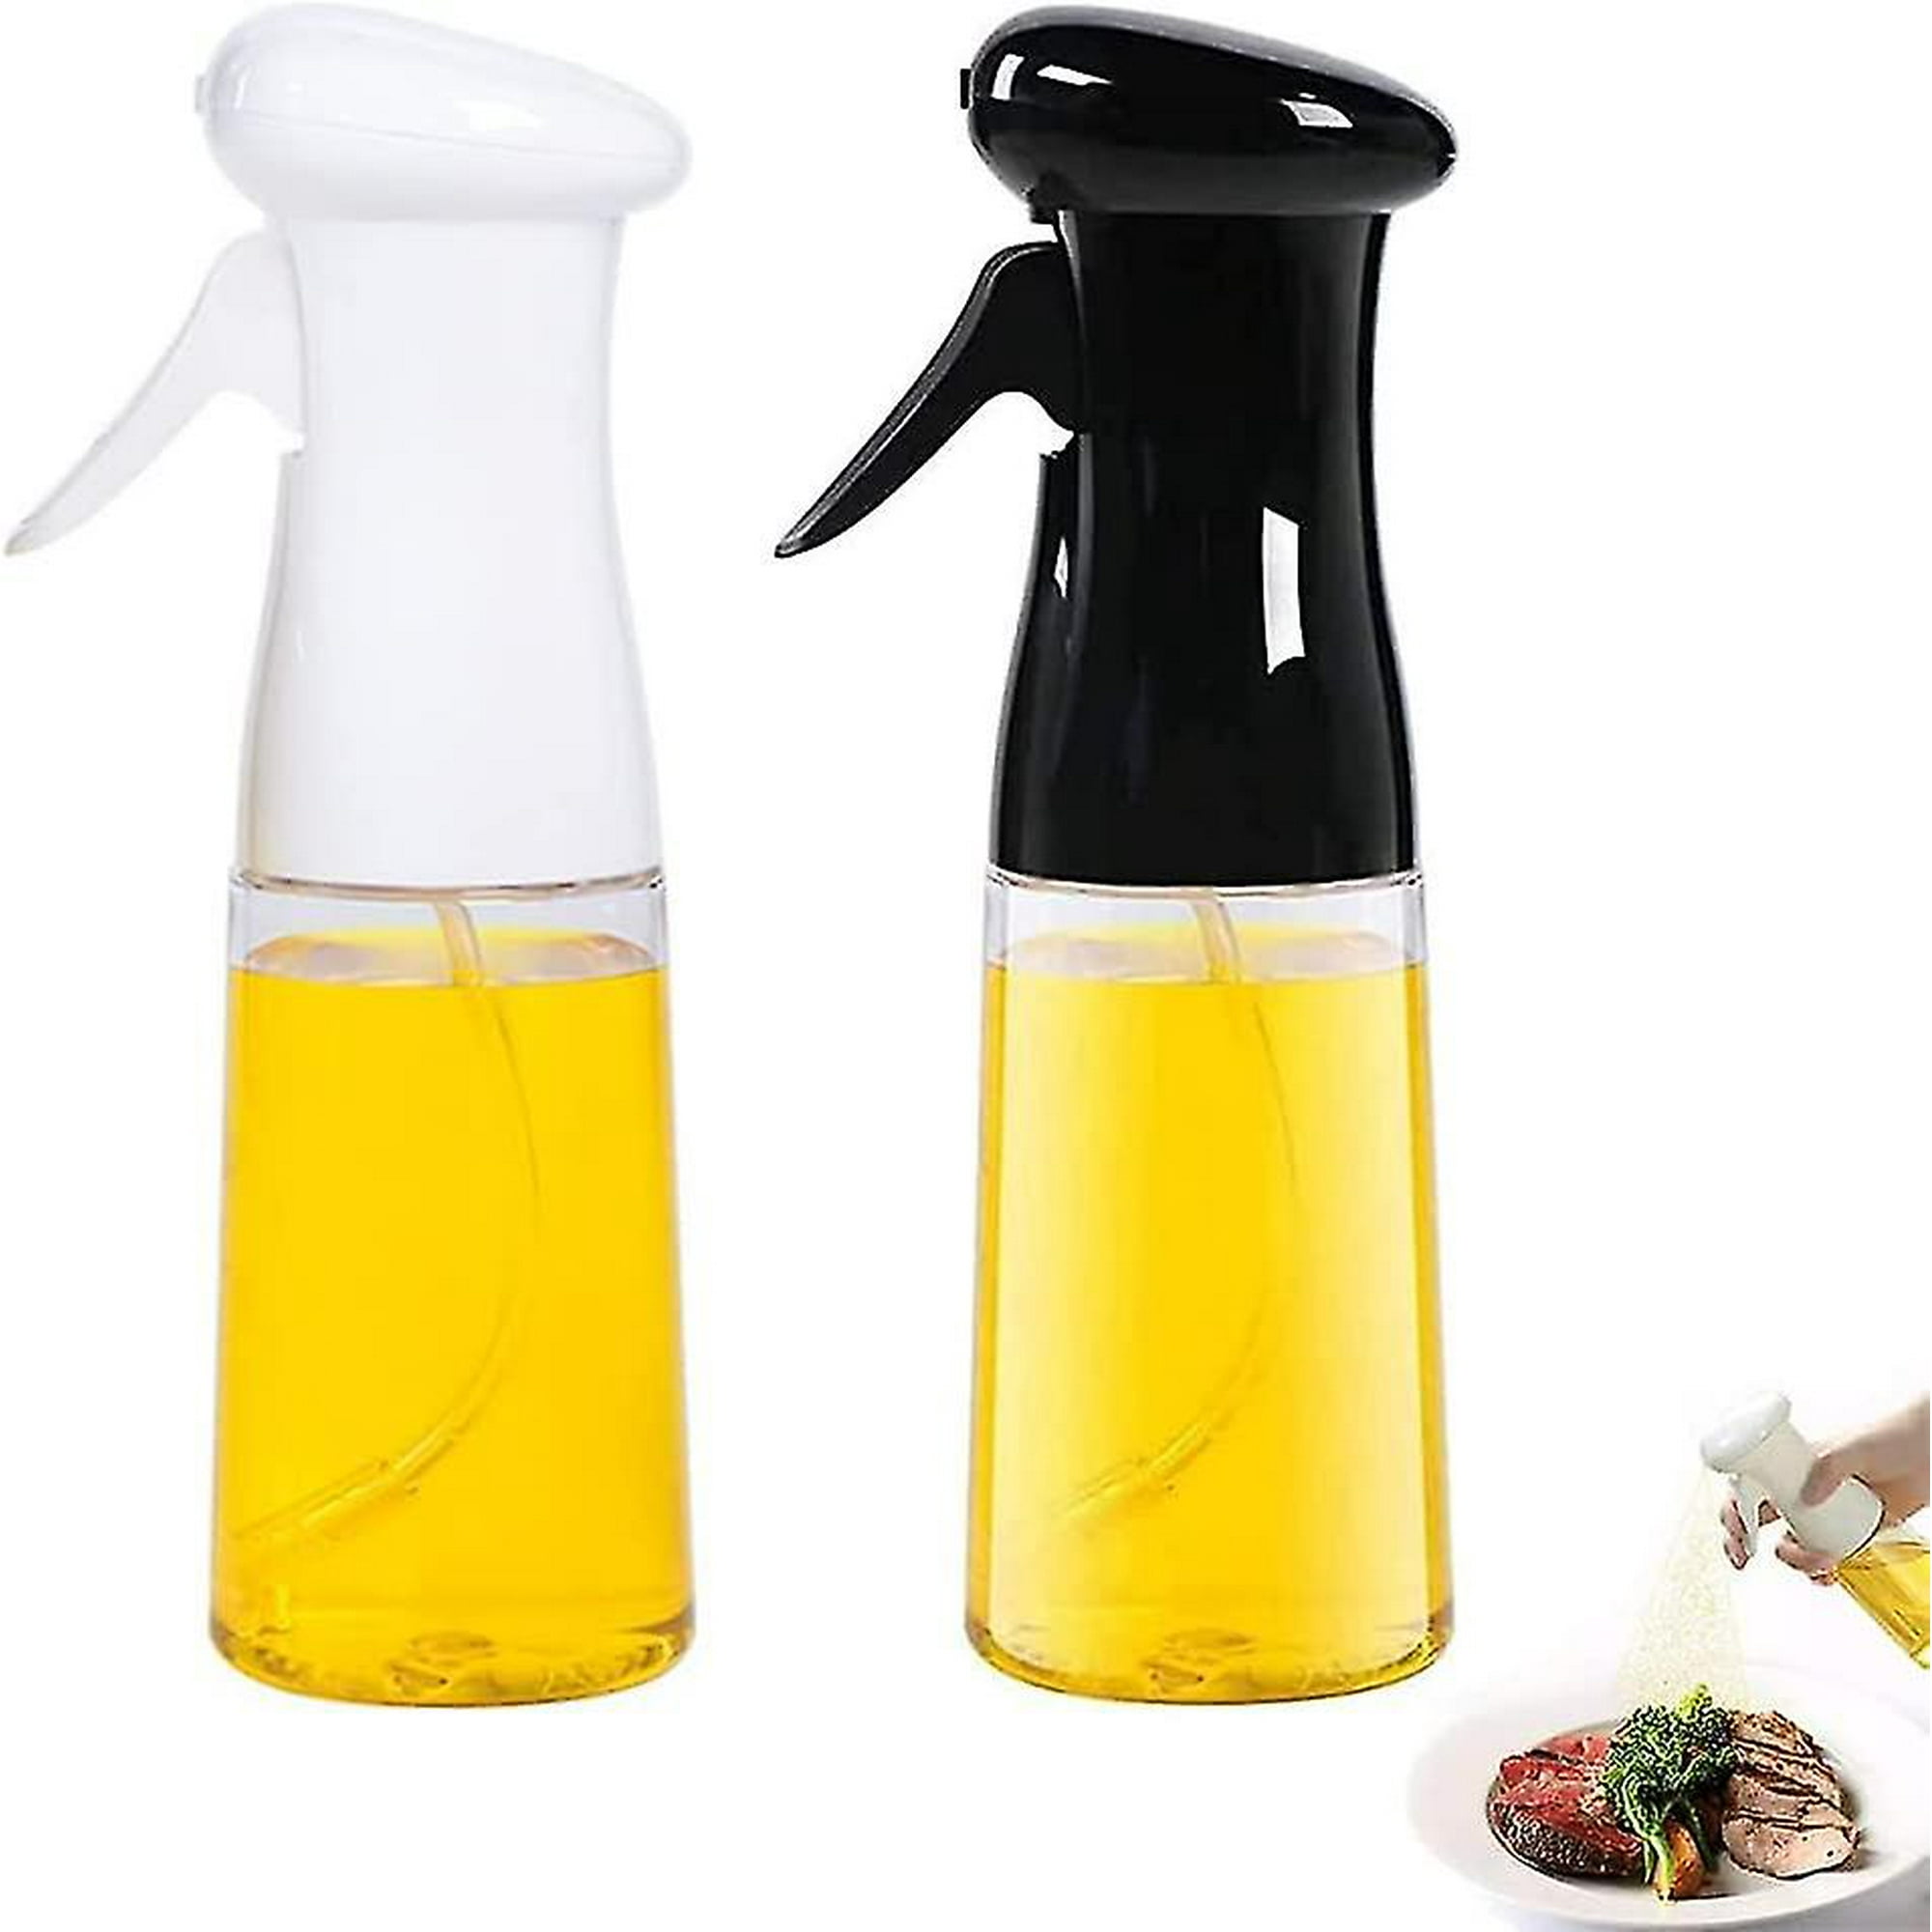  Aminno Dispensador de aceite de oliva y pulverizador de aceite,  dispensador de aceite de vidrio y botella de spray de aceite para hornear  ensaladas, dispensador de aceite con vertedor de acero 